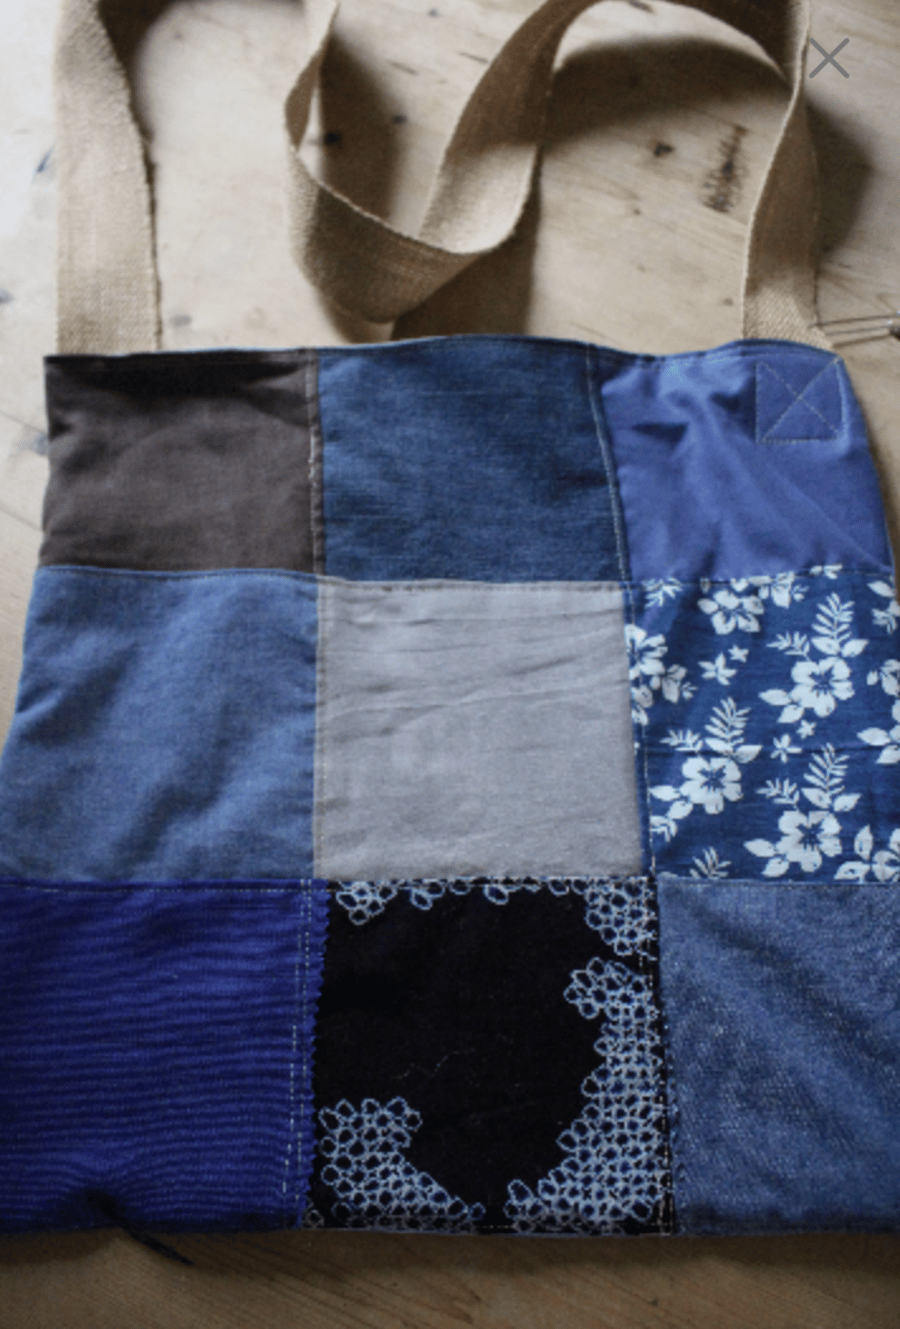 Handmade patchwork shoulder bag